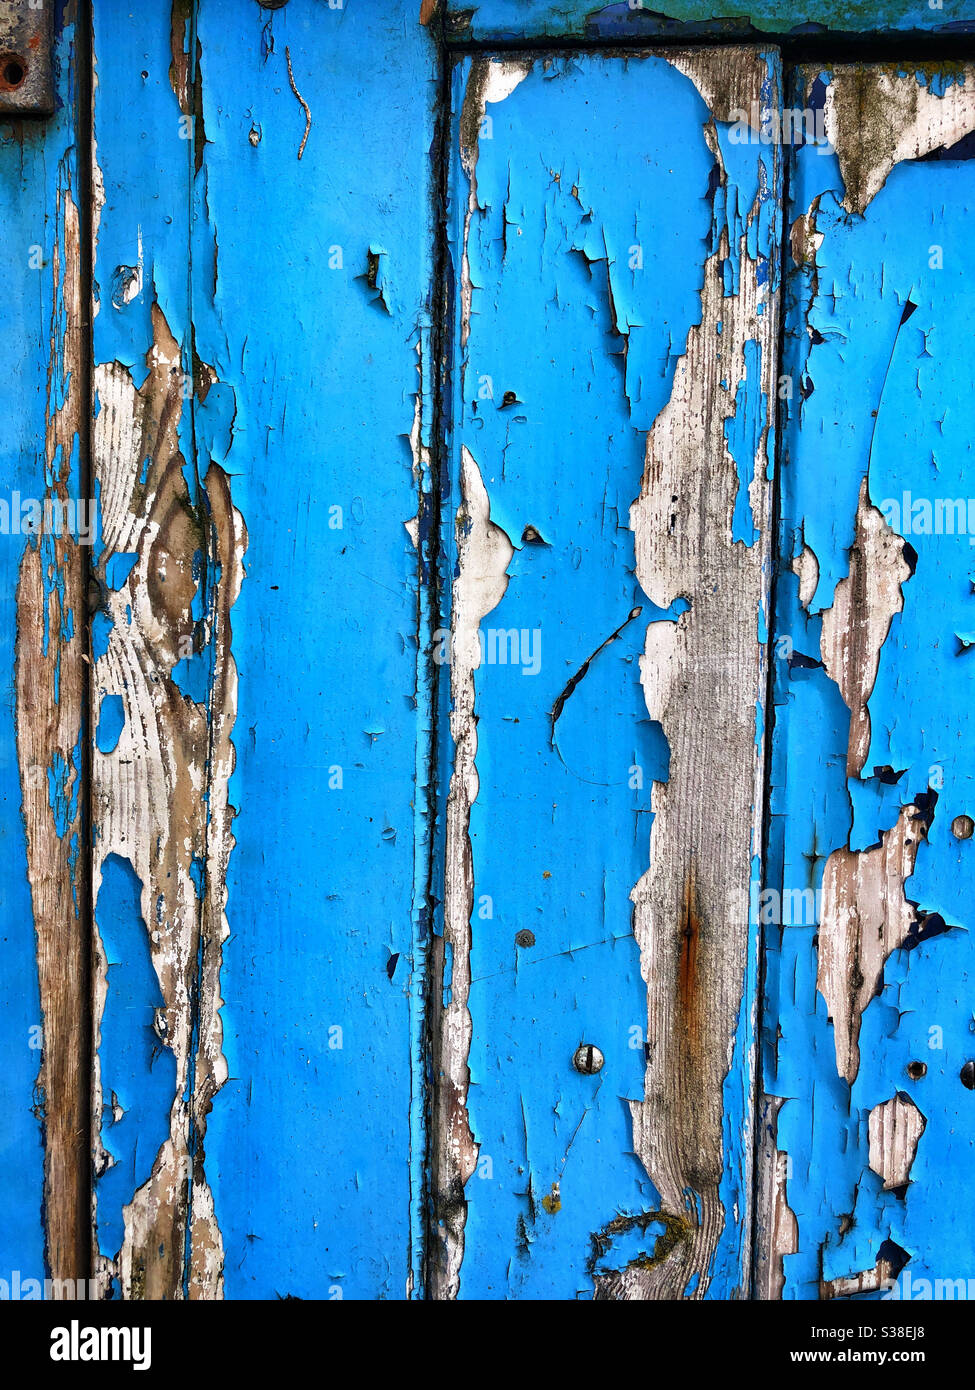 Alte blaue Farbe, die von einer hölzernen Garagentür abblättet Stockfoto